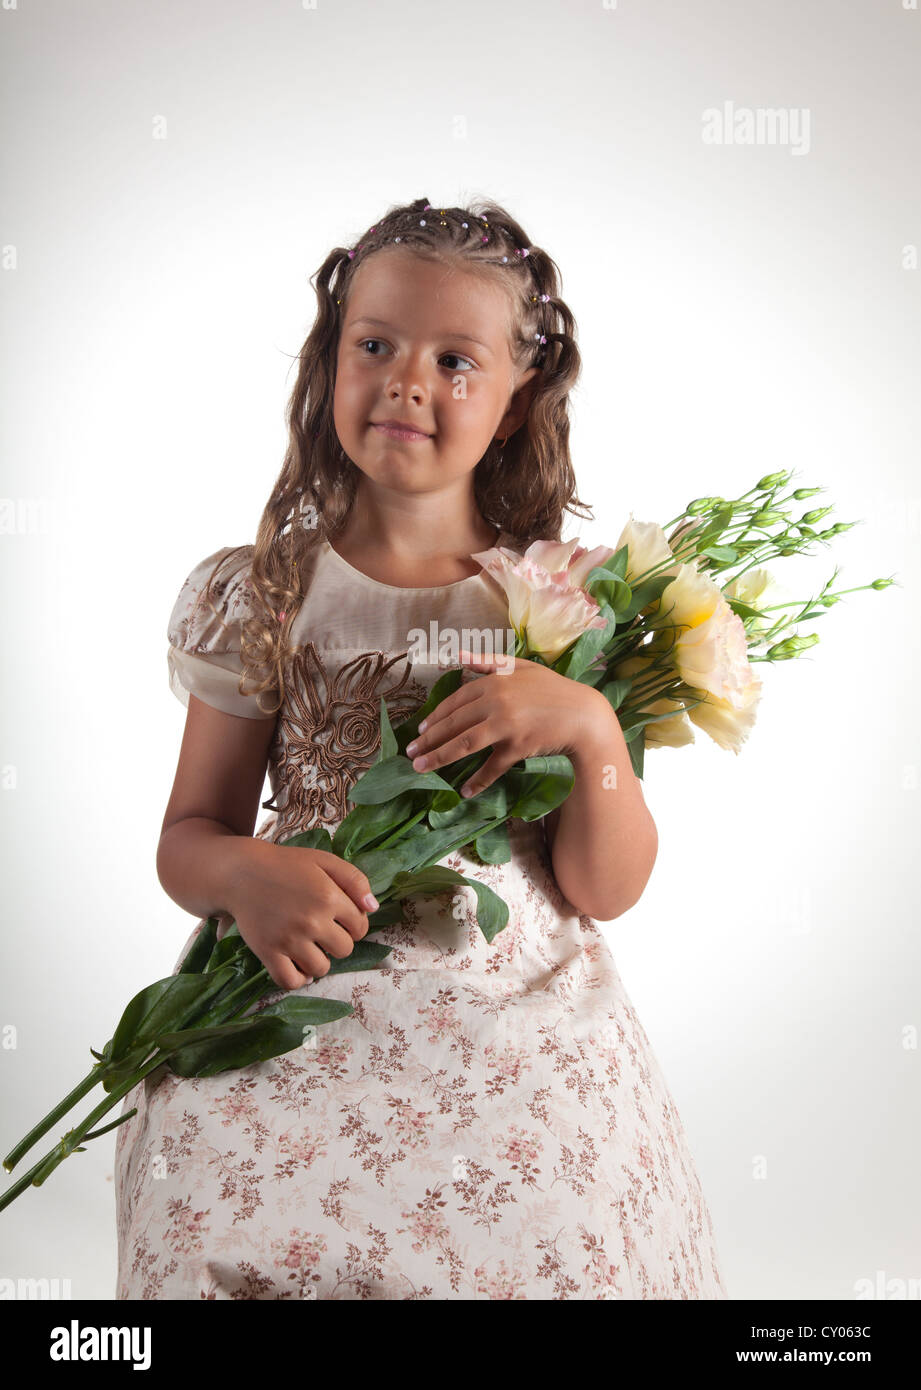 Niedliche kleine Mädchen mit Zopf Frisur hält Blumen, Studio gedreht Stockfoto